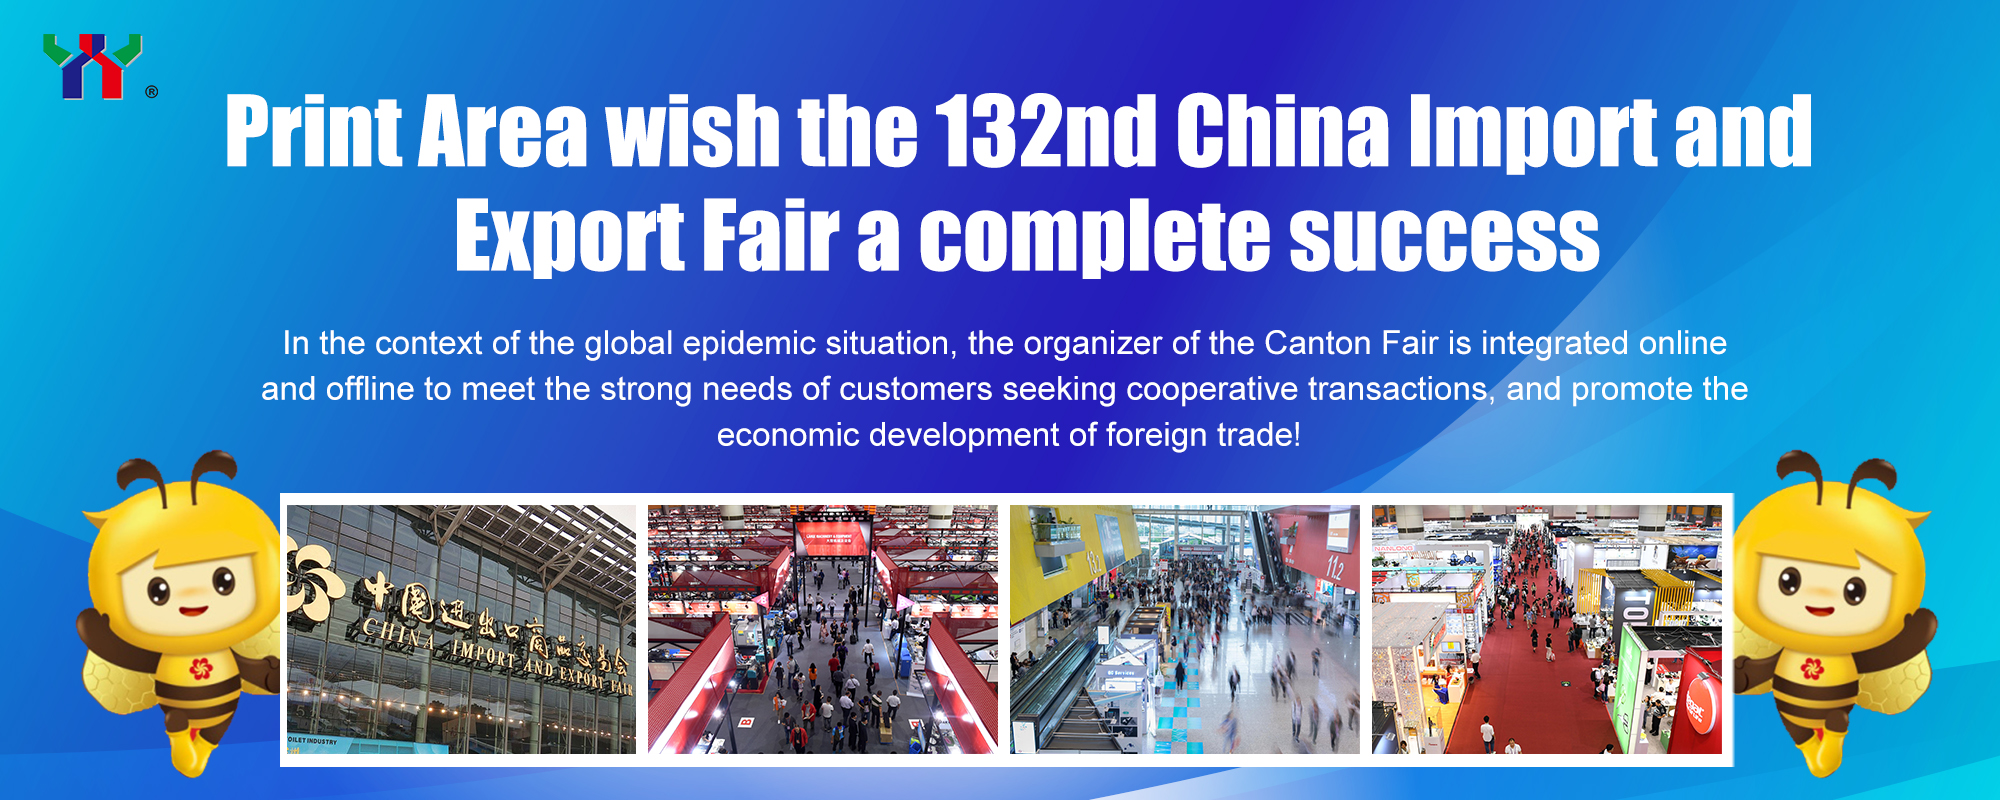 Print Area augura un completo successo alla 132a China Import and Export Fair